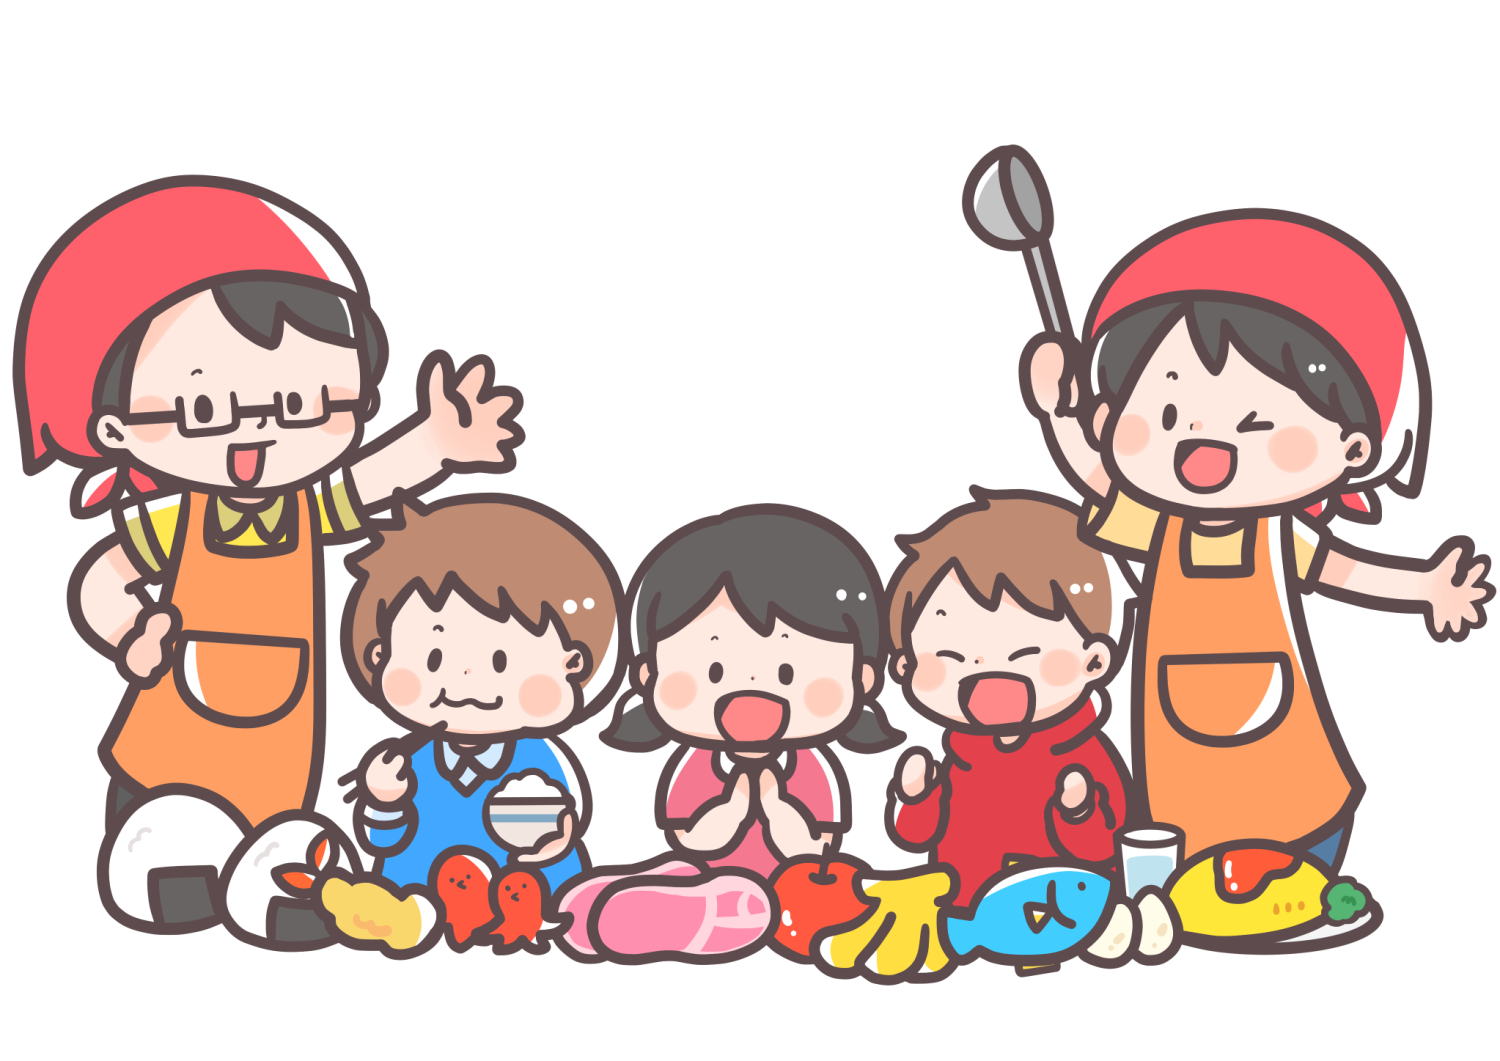 2月2日 16日 守山駅前子ども食堂 メニューはのり巻き寿司とお好み焼き みんなで楽しく美味しくいただきましょう 滋賀のママがイベント 育児 遊び 学びを発信 シガマンマ ピースマム